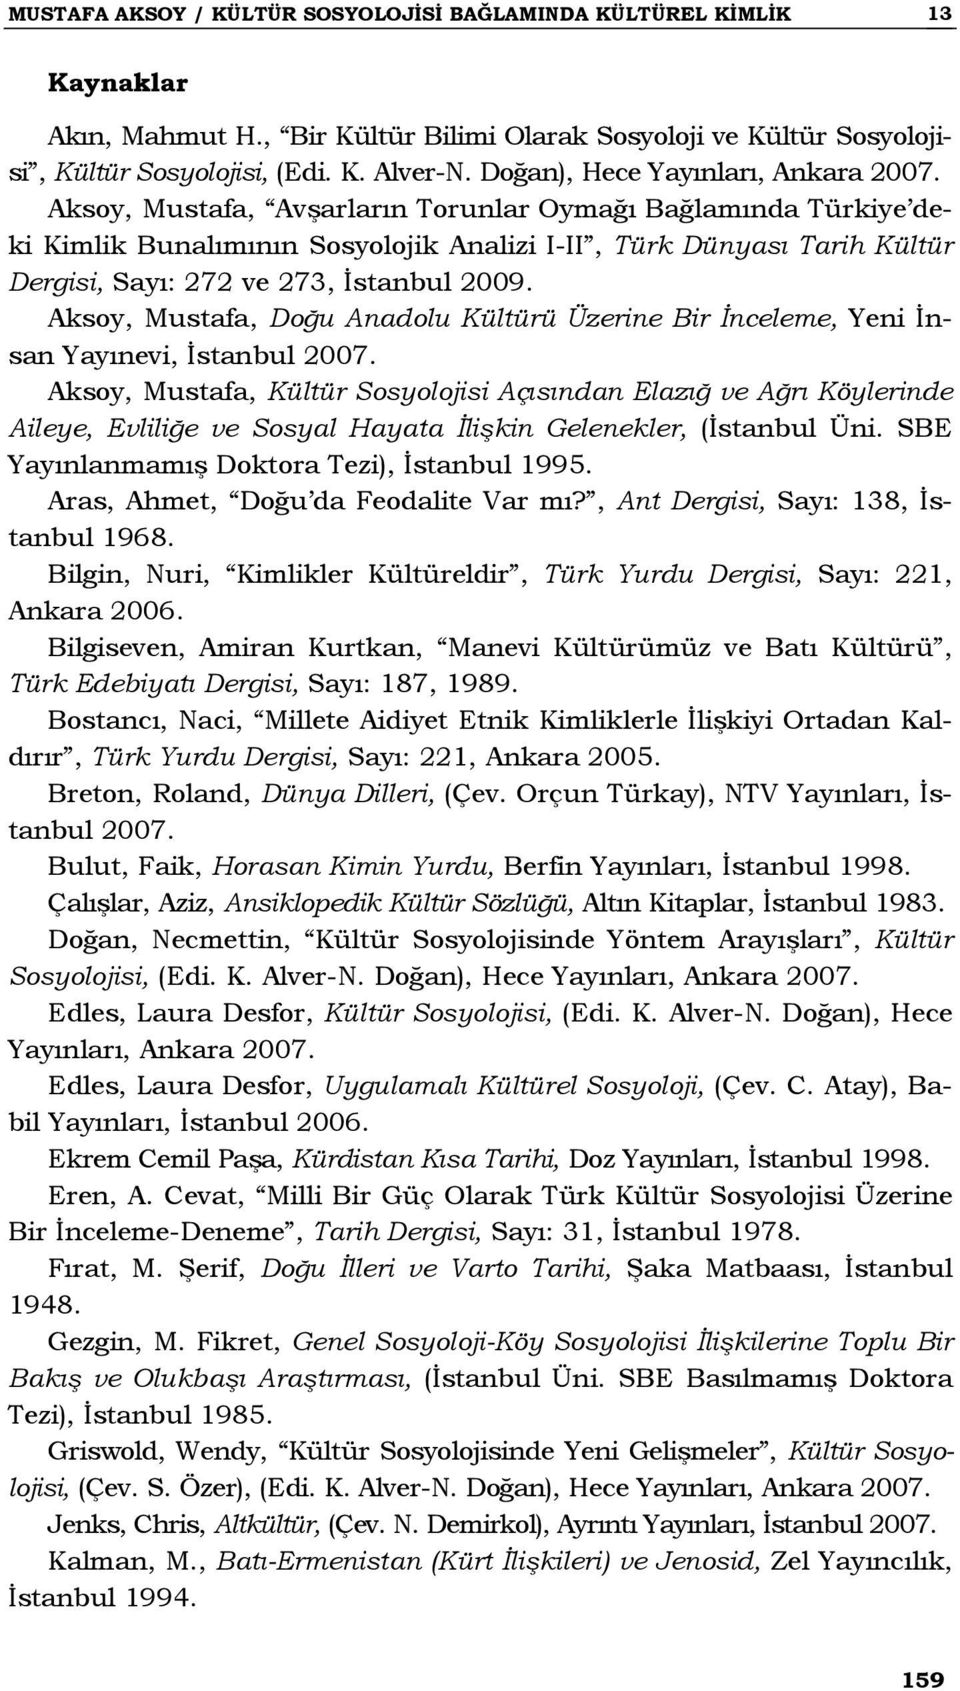 Aksoy, Mustafa, Avşarların Torunlar Oymağı Bağlamında Türkiye deki Kimlik Bunalımının Sosyolojik Analizi I-II, Türk Dünyası Tarih Kültür Dergisi, Sayı: 272 ve 273, İstanbul 2009.